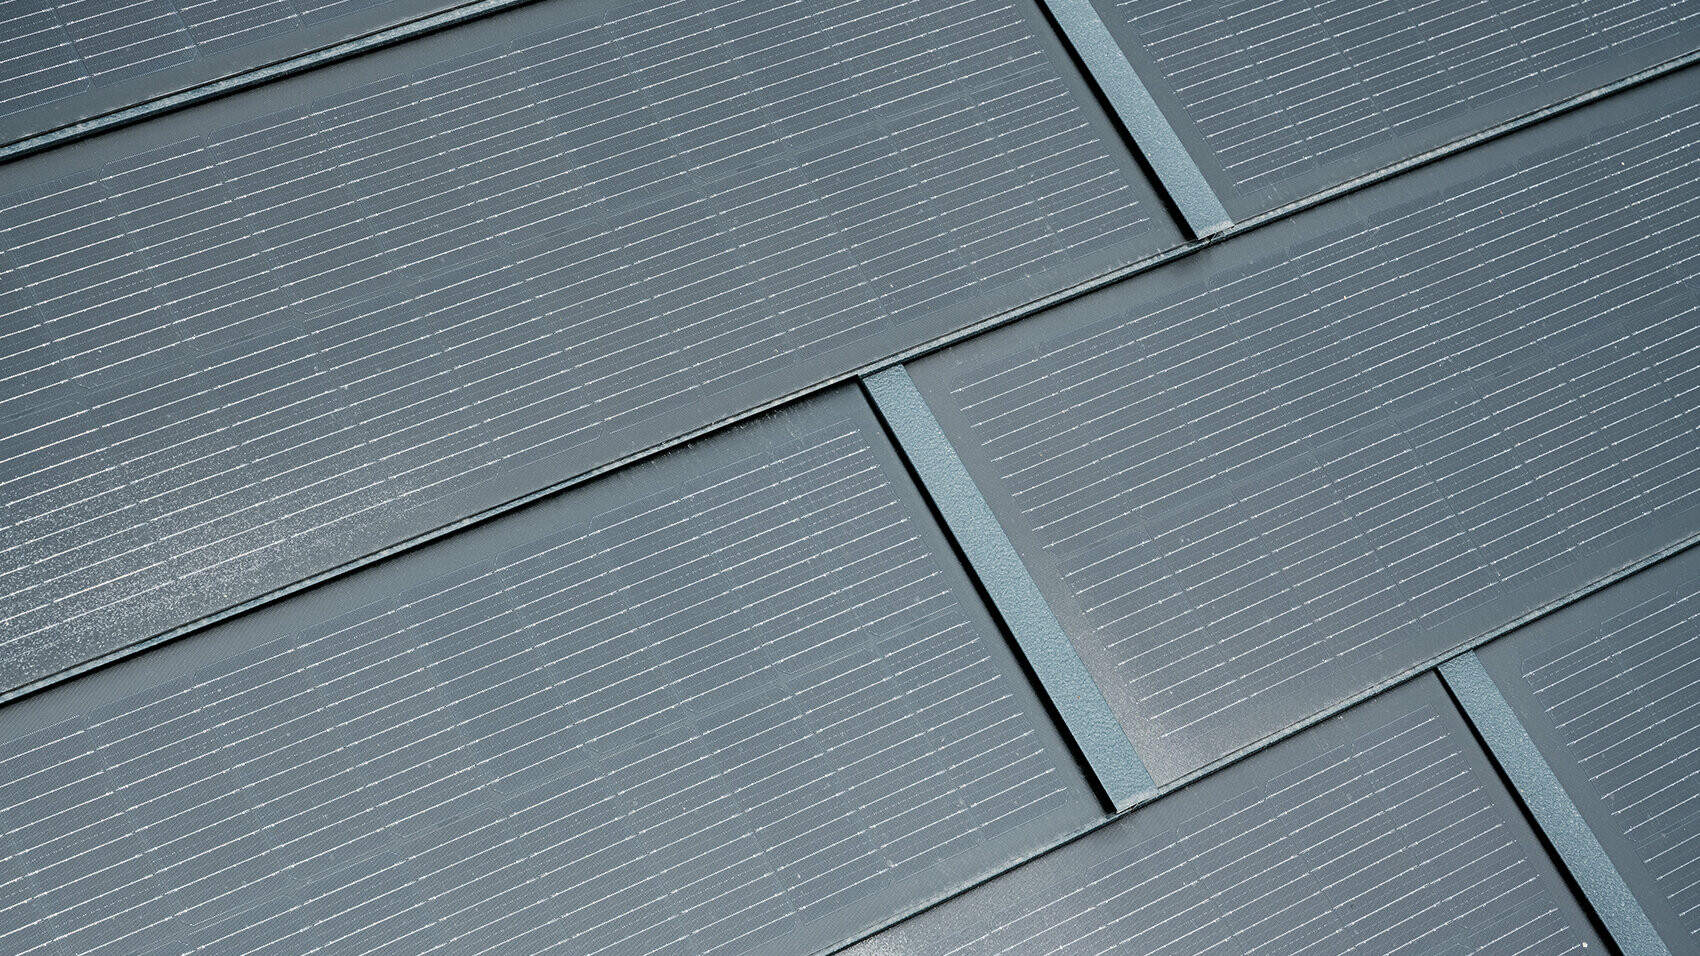 Detailaufnahme der PREFA Solardachplatte in der Farbe Anthrazit. Mit den integrierten Photovoltaik-Modulen produziert das sturmsichere Dachsystem aus Aluminium Strom aus Sonnenenergie, während es das Haus schützt.